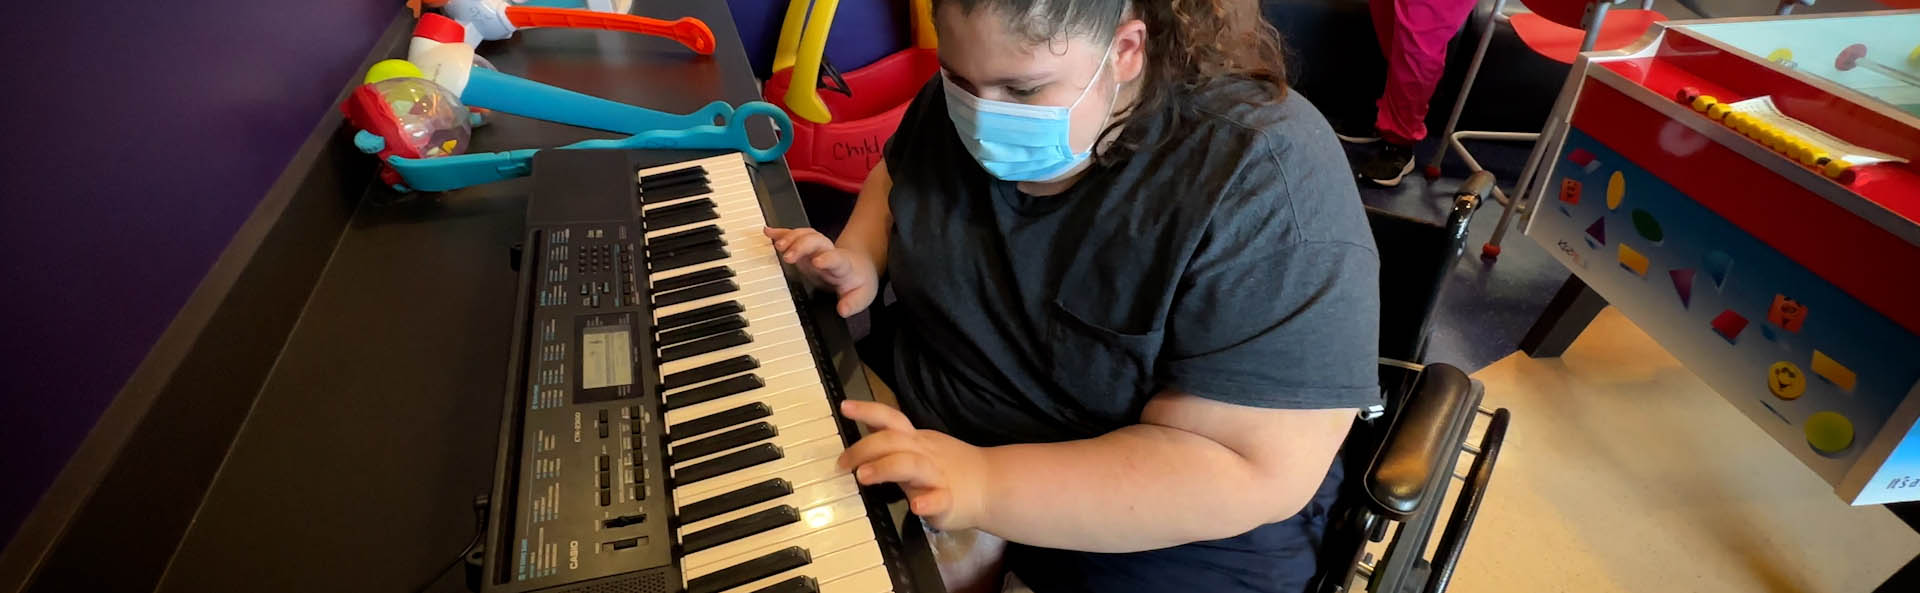 Un enfant dans un masque jouant sur un clavier